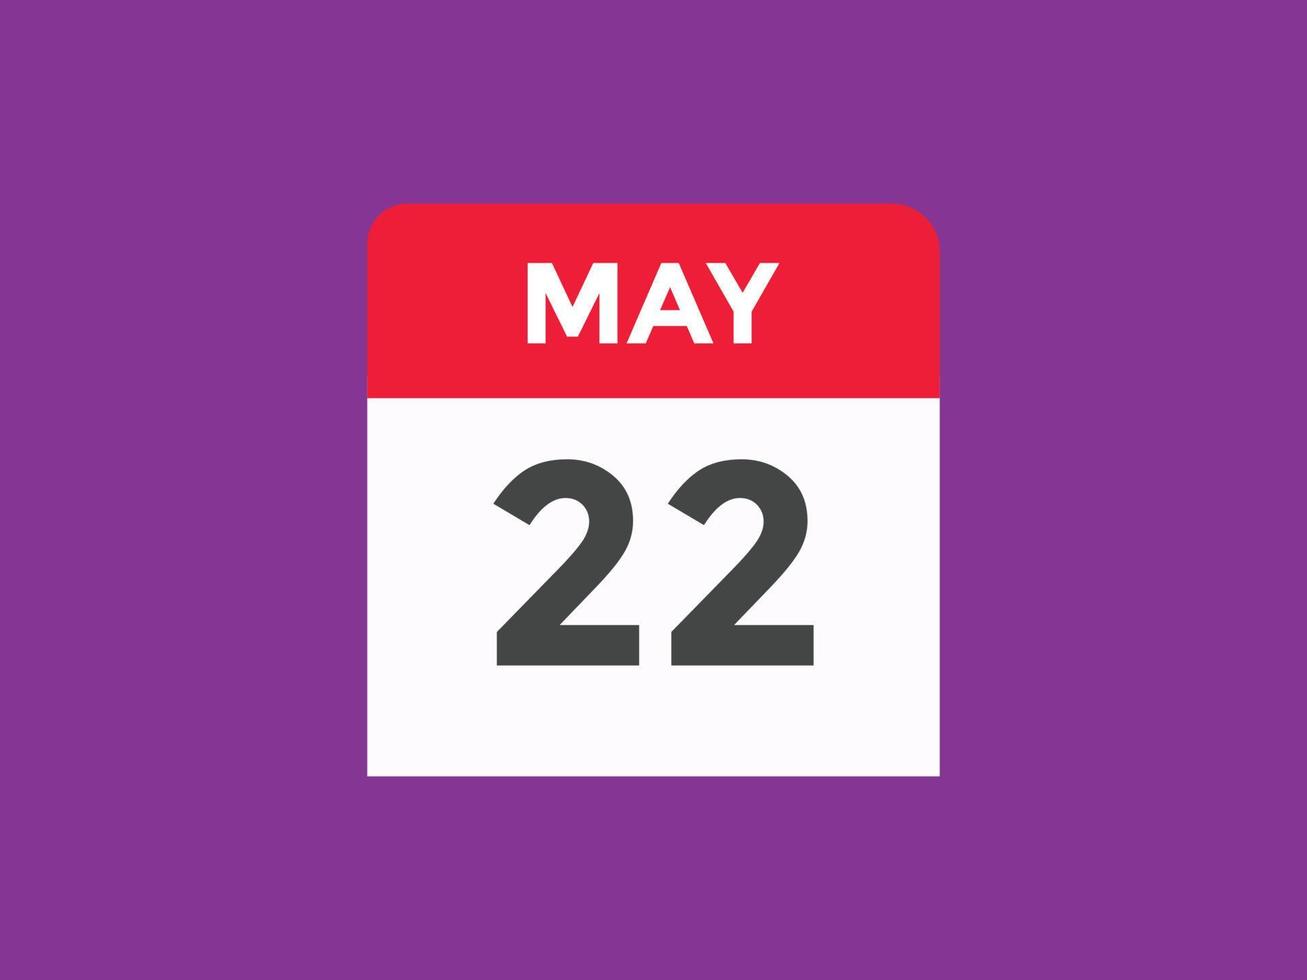 may 22 calendar reminder. 22th may daily calendar icon template. Calendar 22th may icon Design template. Vector illustration